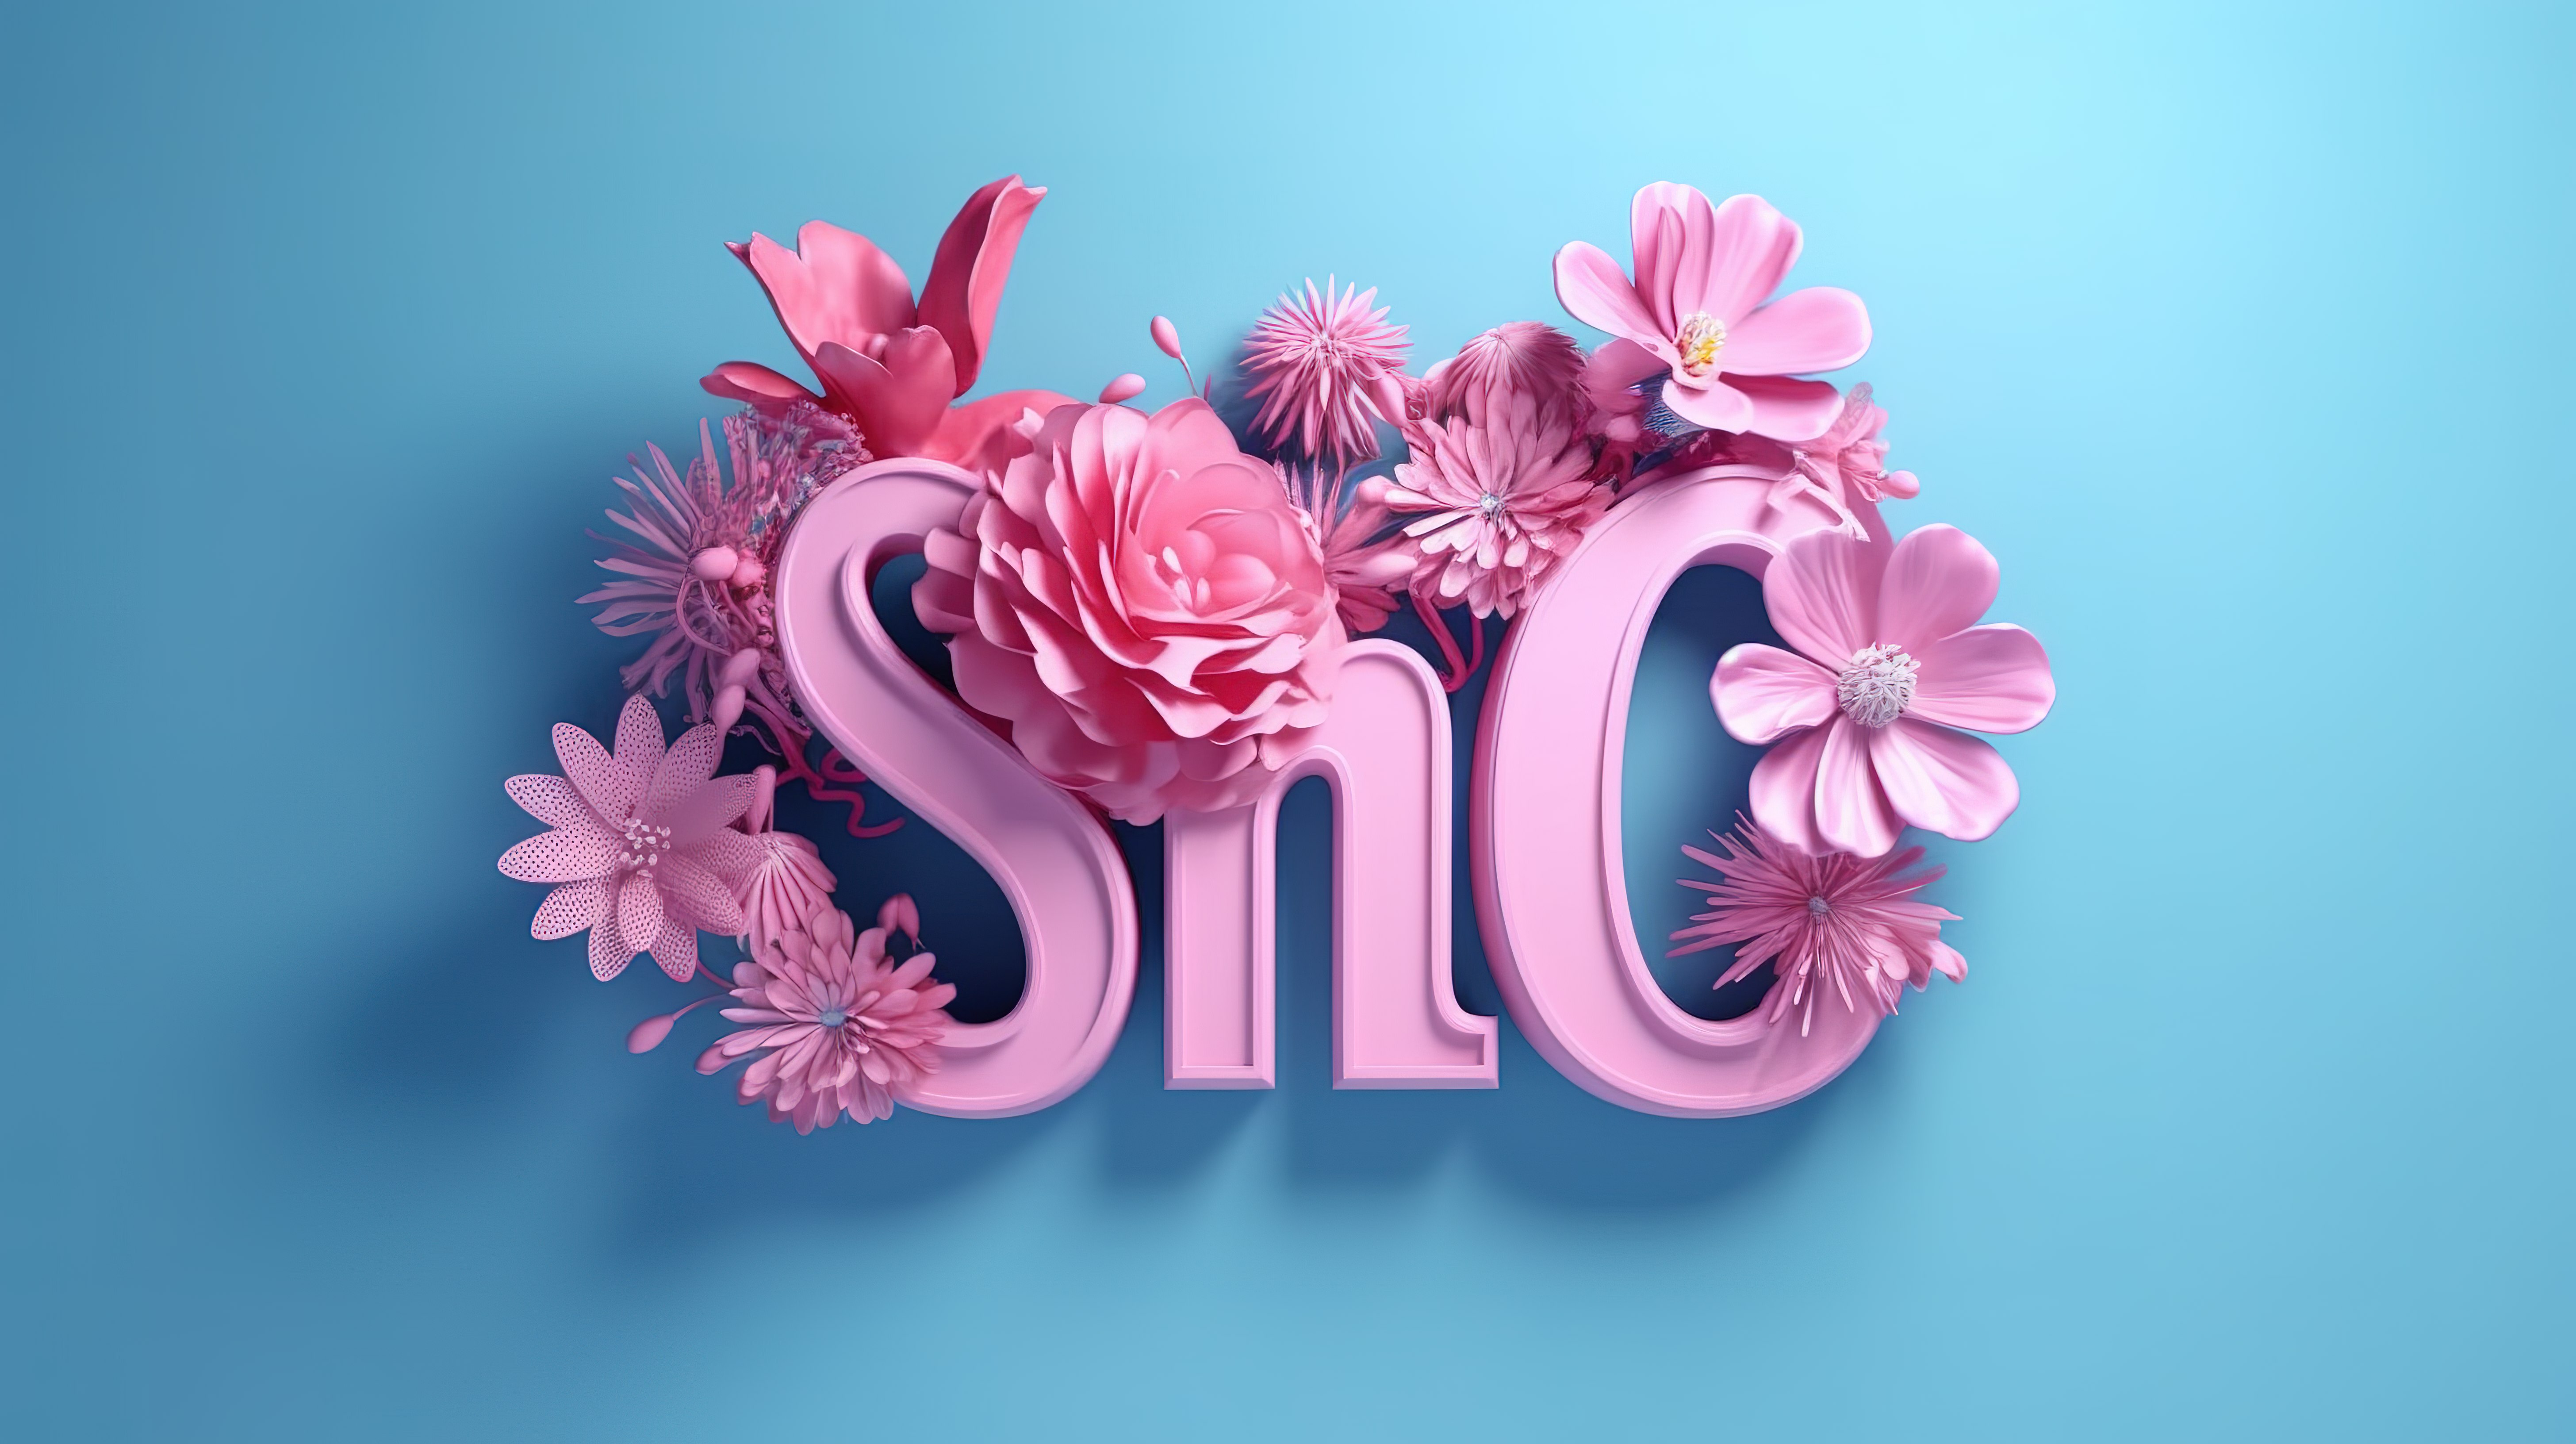 在孤立的蓝色背景上用令人惊叹的粉红色纸制作的“春天”的生动 3D 插图图片